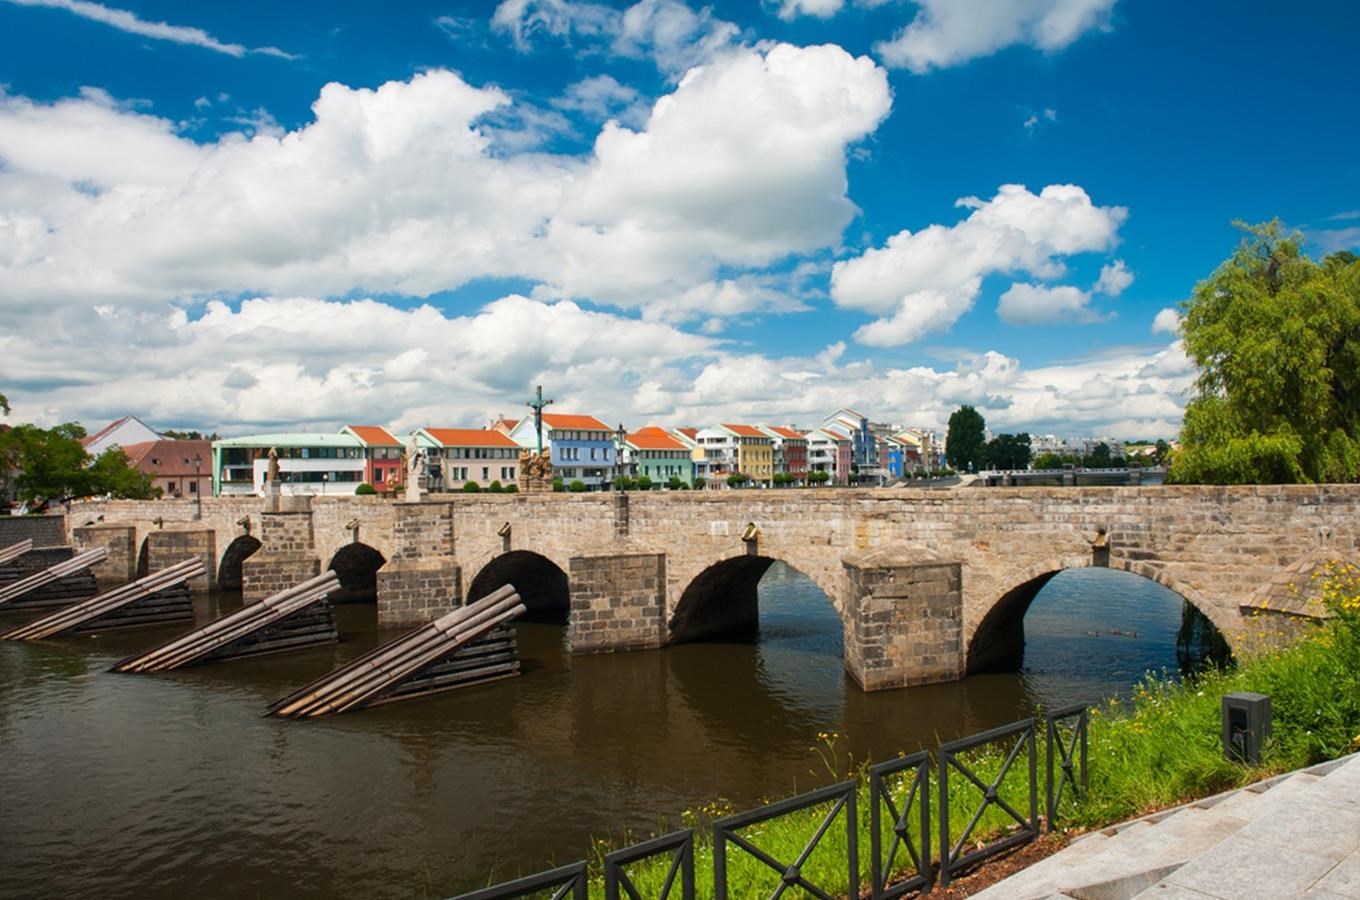 Kamenný most v Písku - nejstarší kamenný most v České republice a střední Evropě